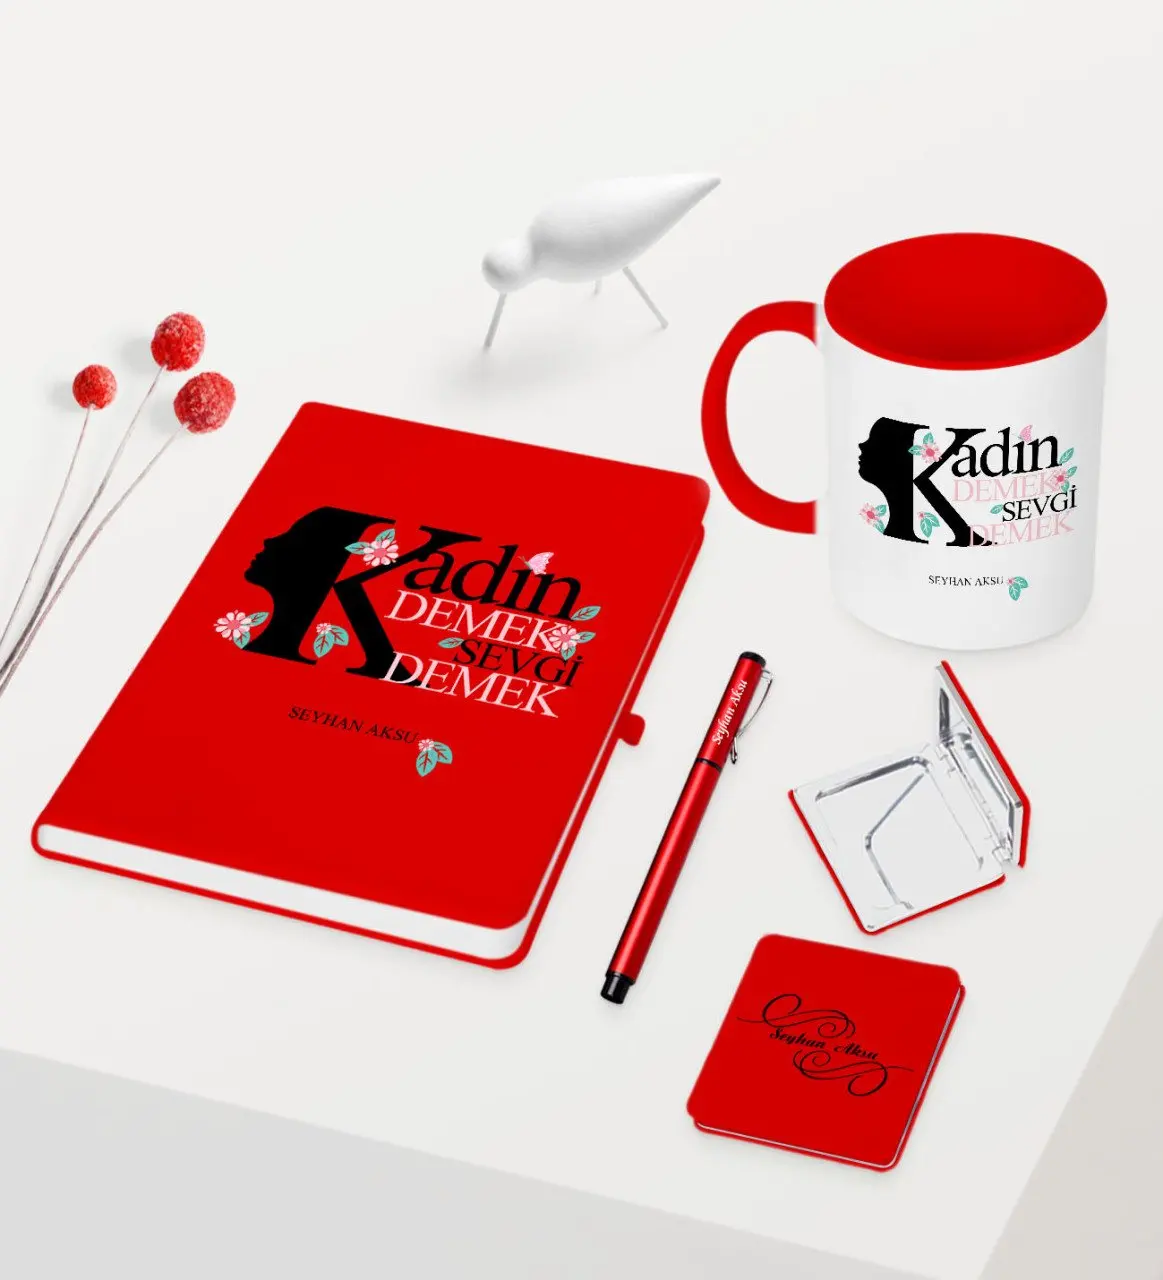 

Персонализированные пользовательские женщины день тематические красная ручка для записной книжки чашки зеркало набор-4